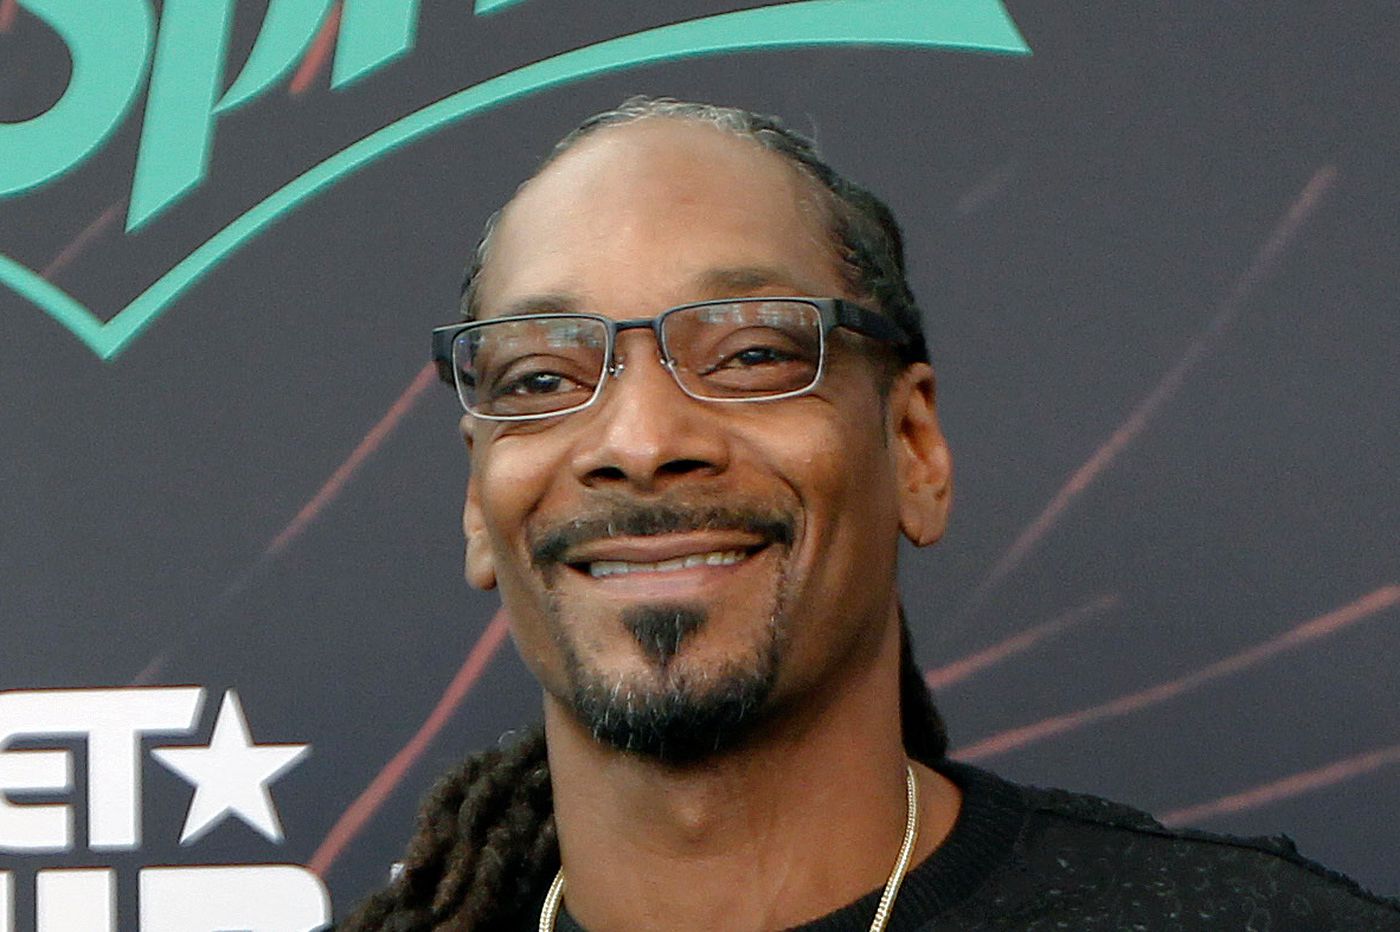 Snoopp Dogg juga belum pernah meraih kemenangan di ajang Grammy Awards